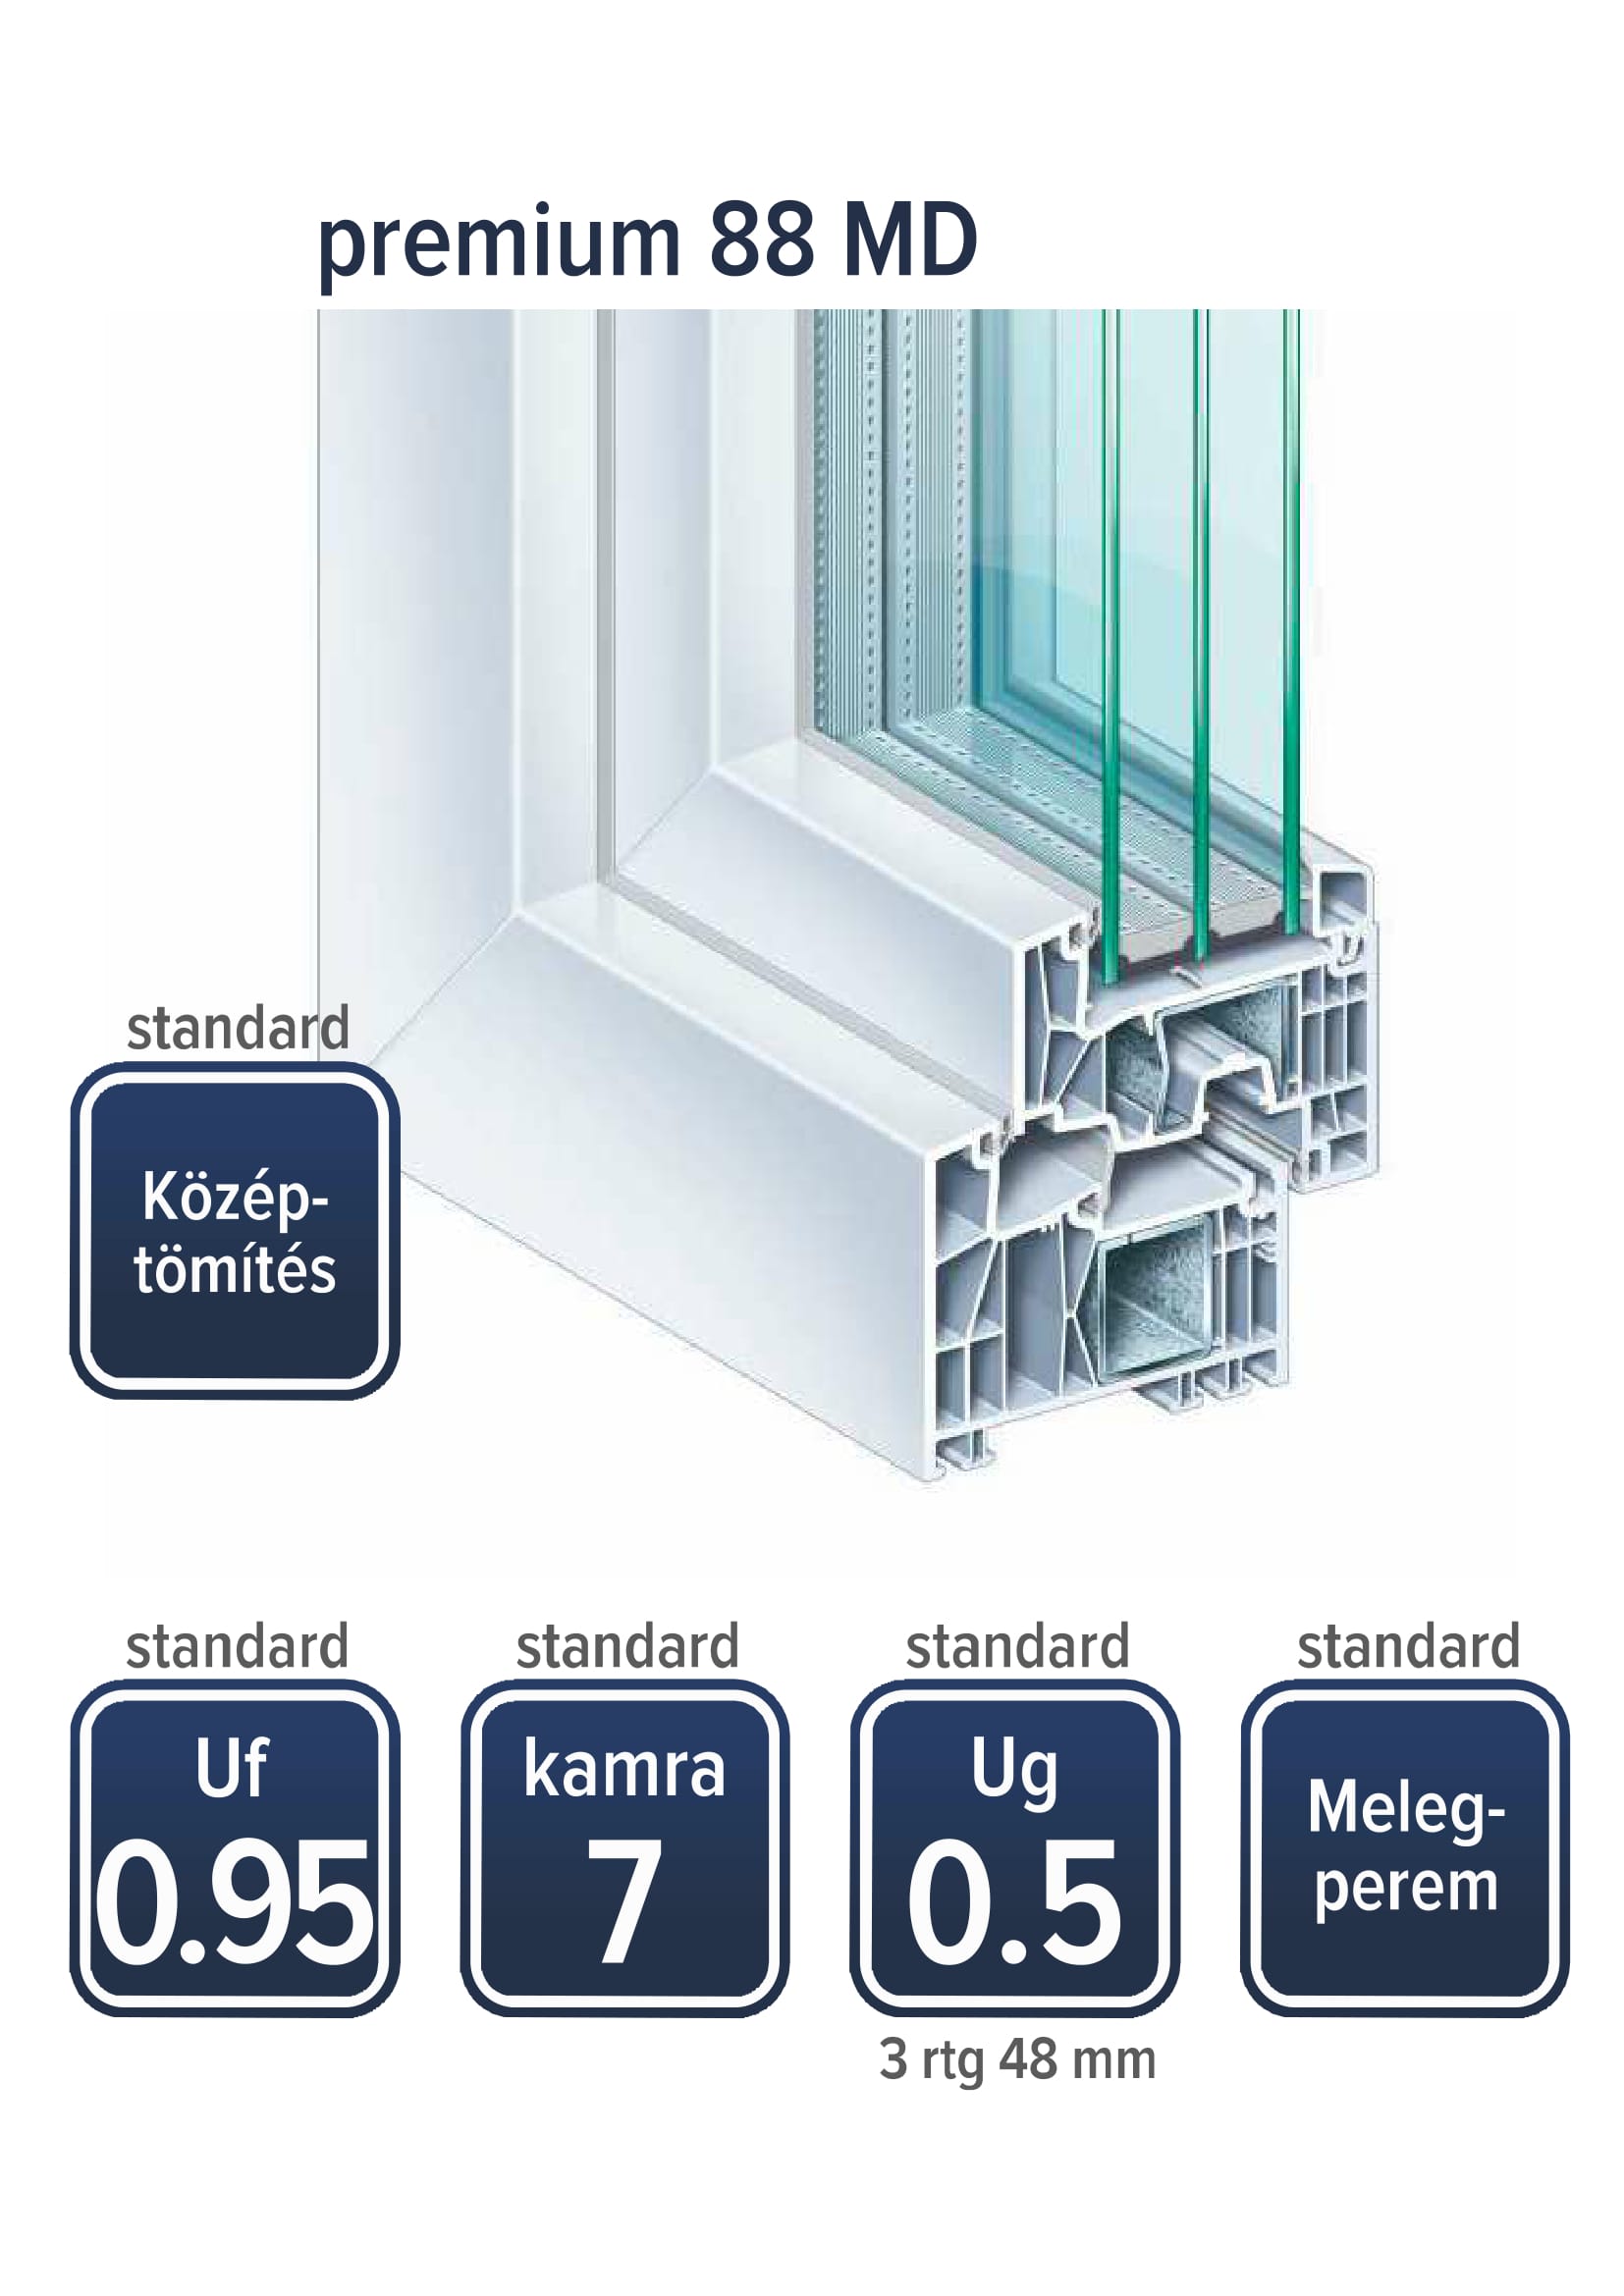 kömmerling premium 88 MD műanyag ablak tulajdonságai